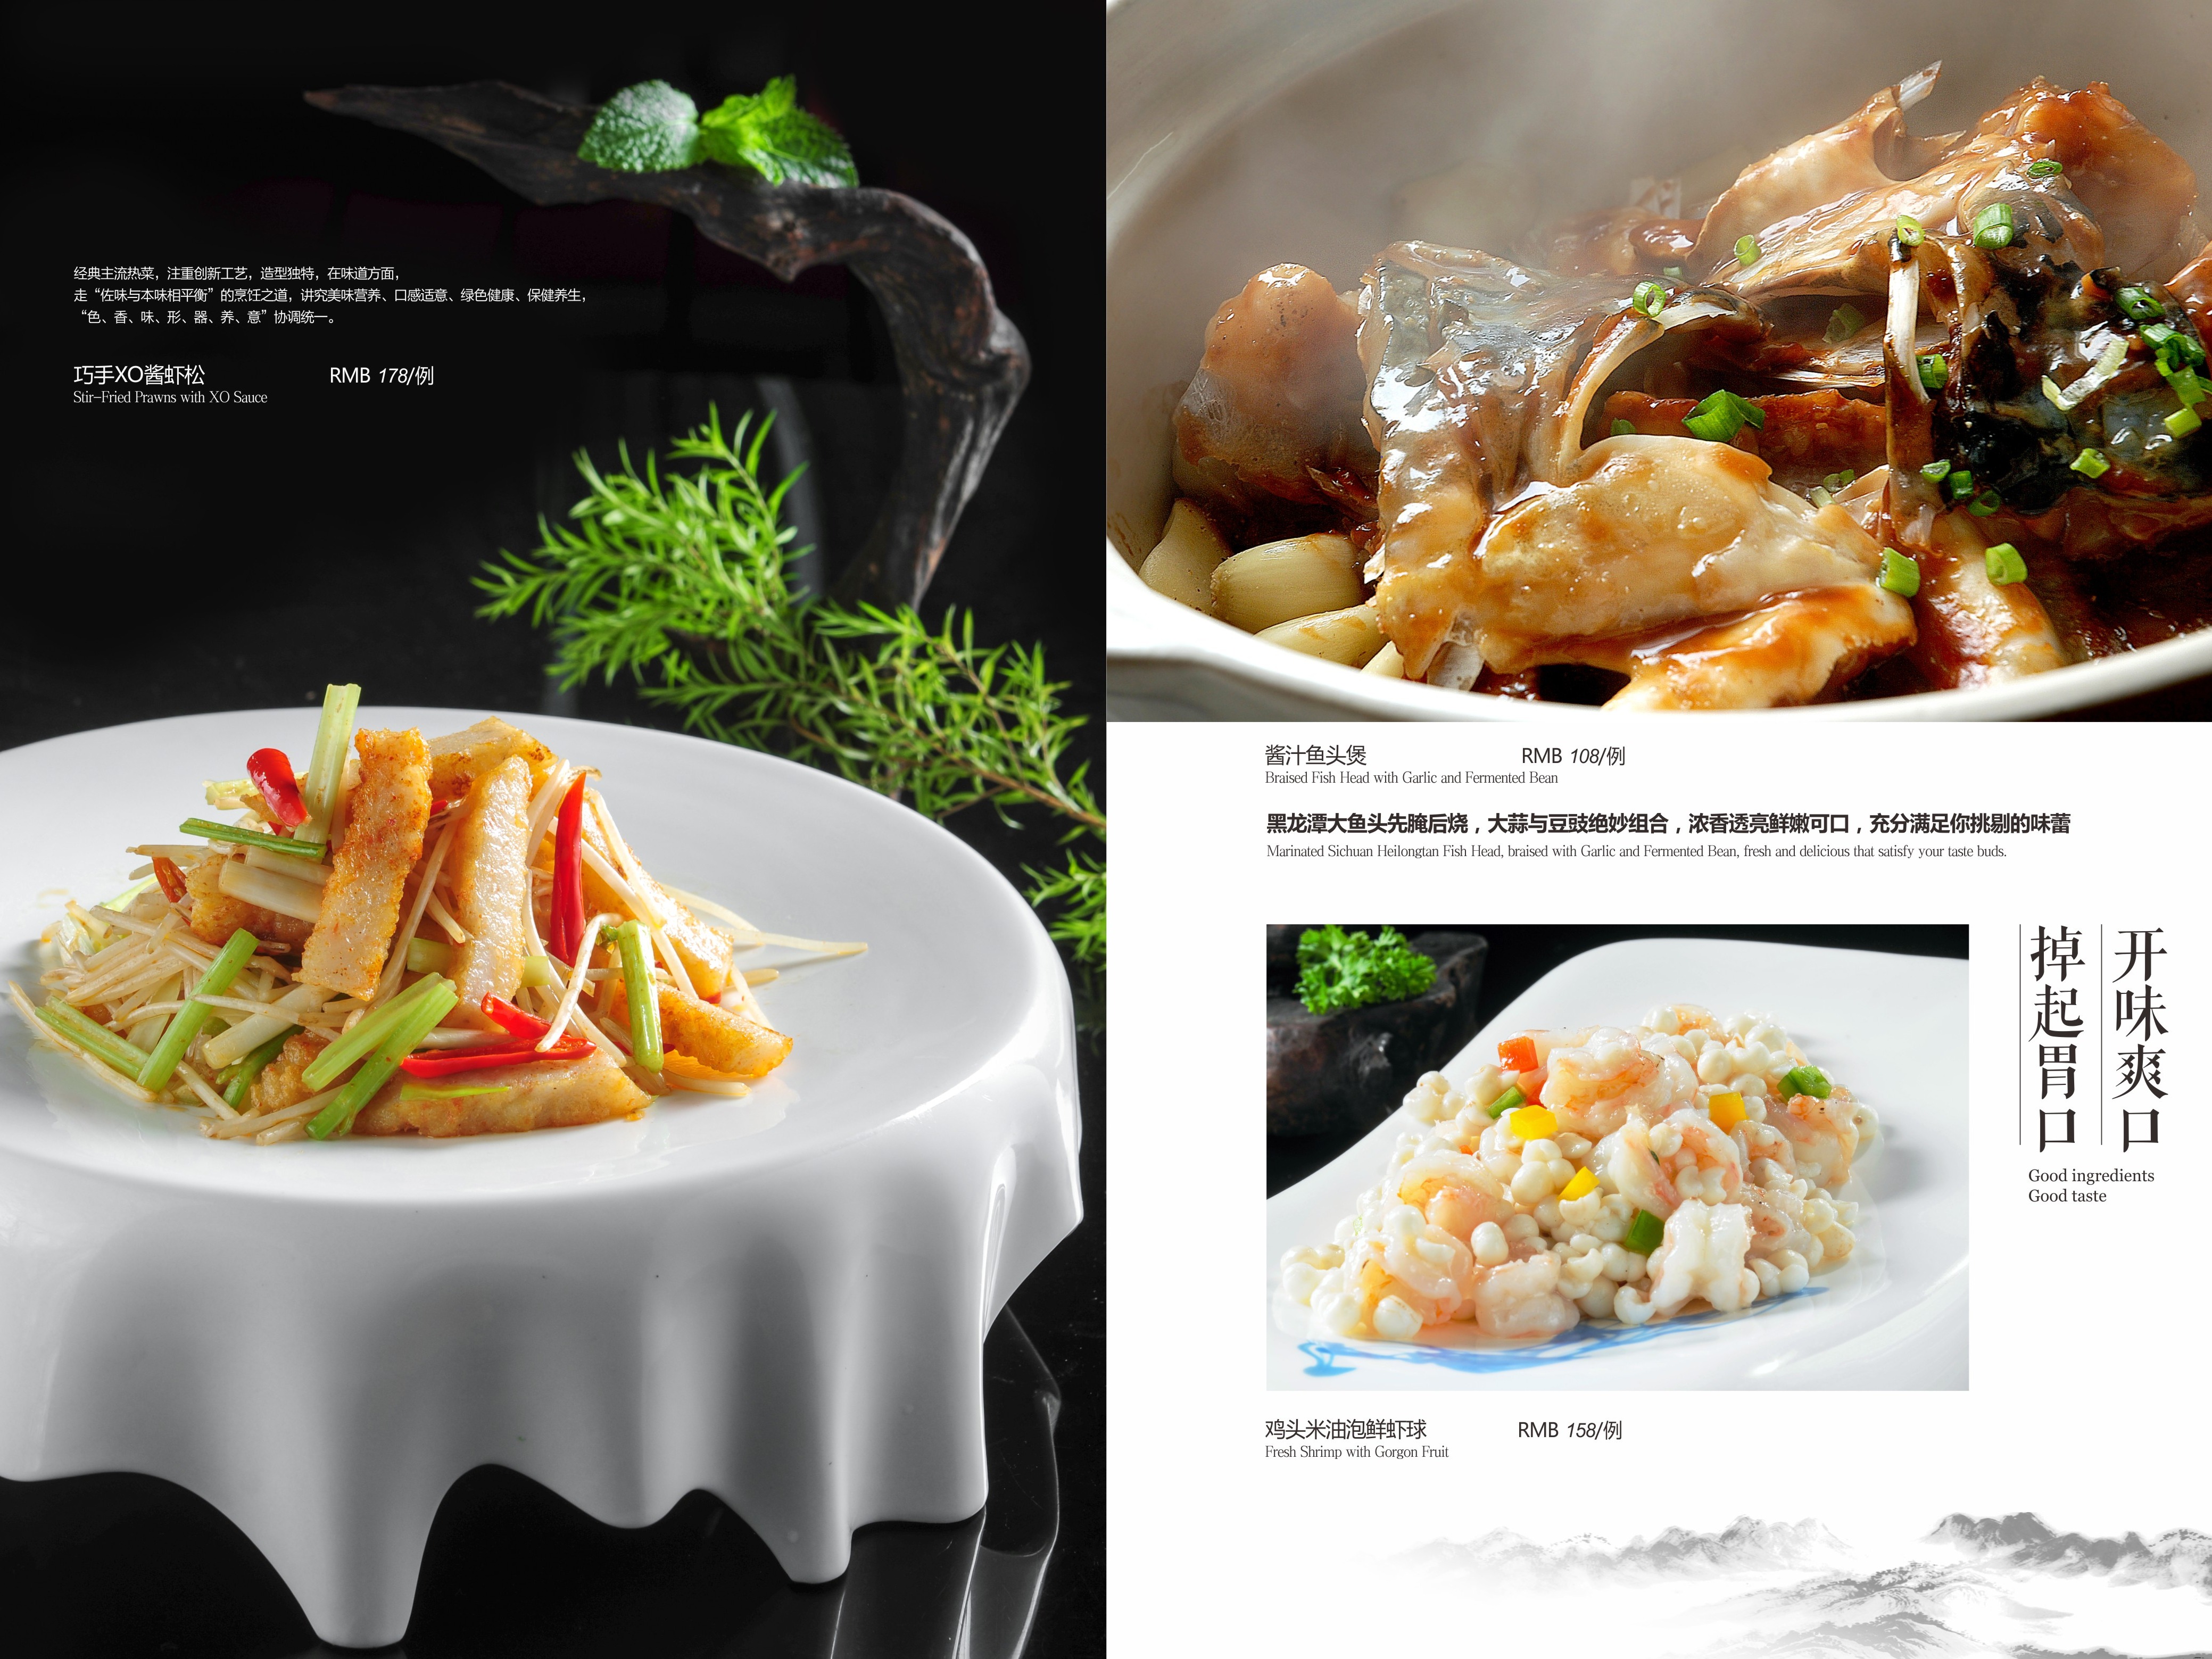 五星级酒店菜谱设计制作规格-菜谱设计印刷尺寸规格大小-捷达菜谱设计制作公司